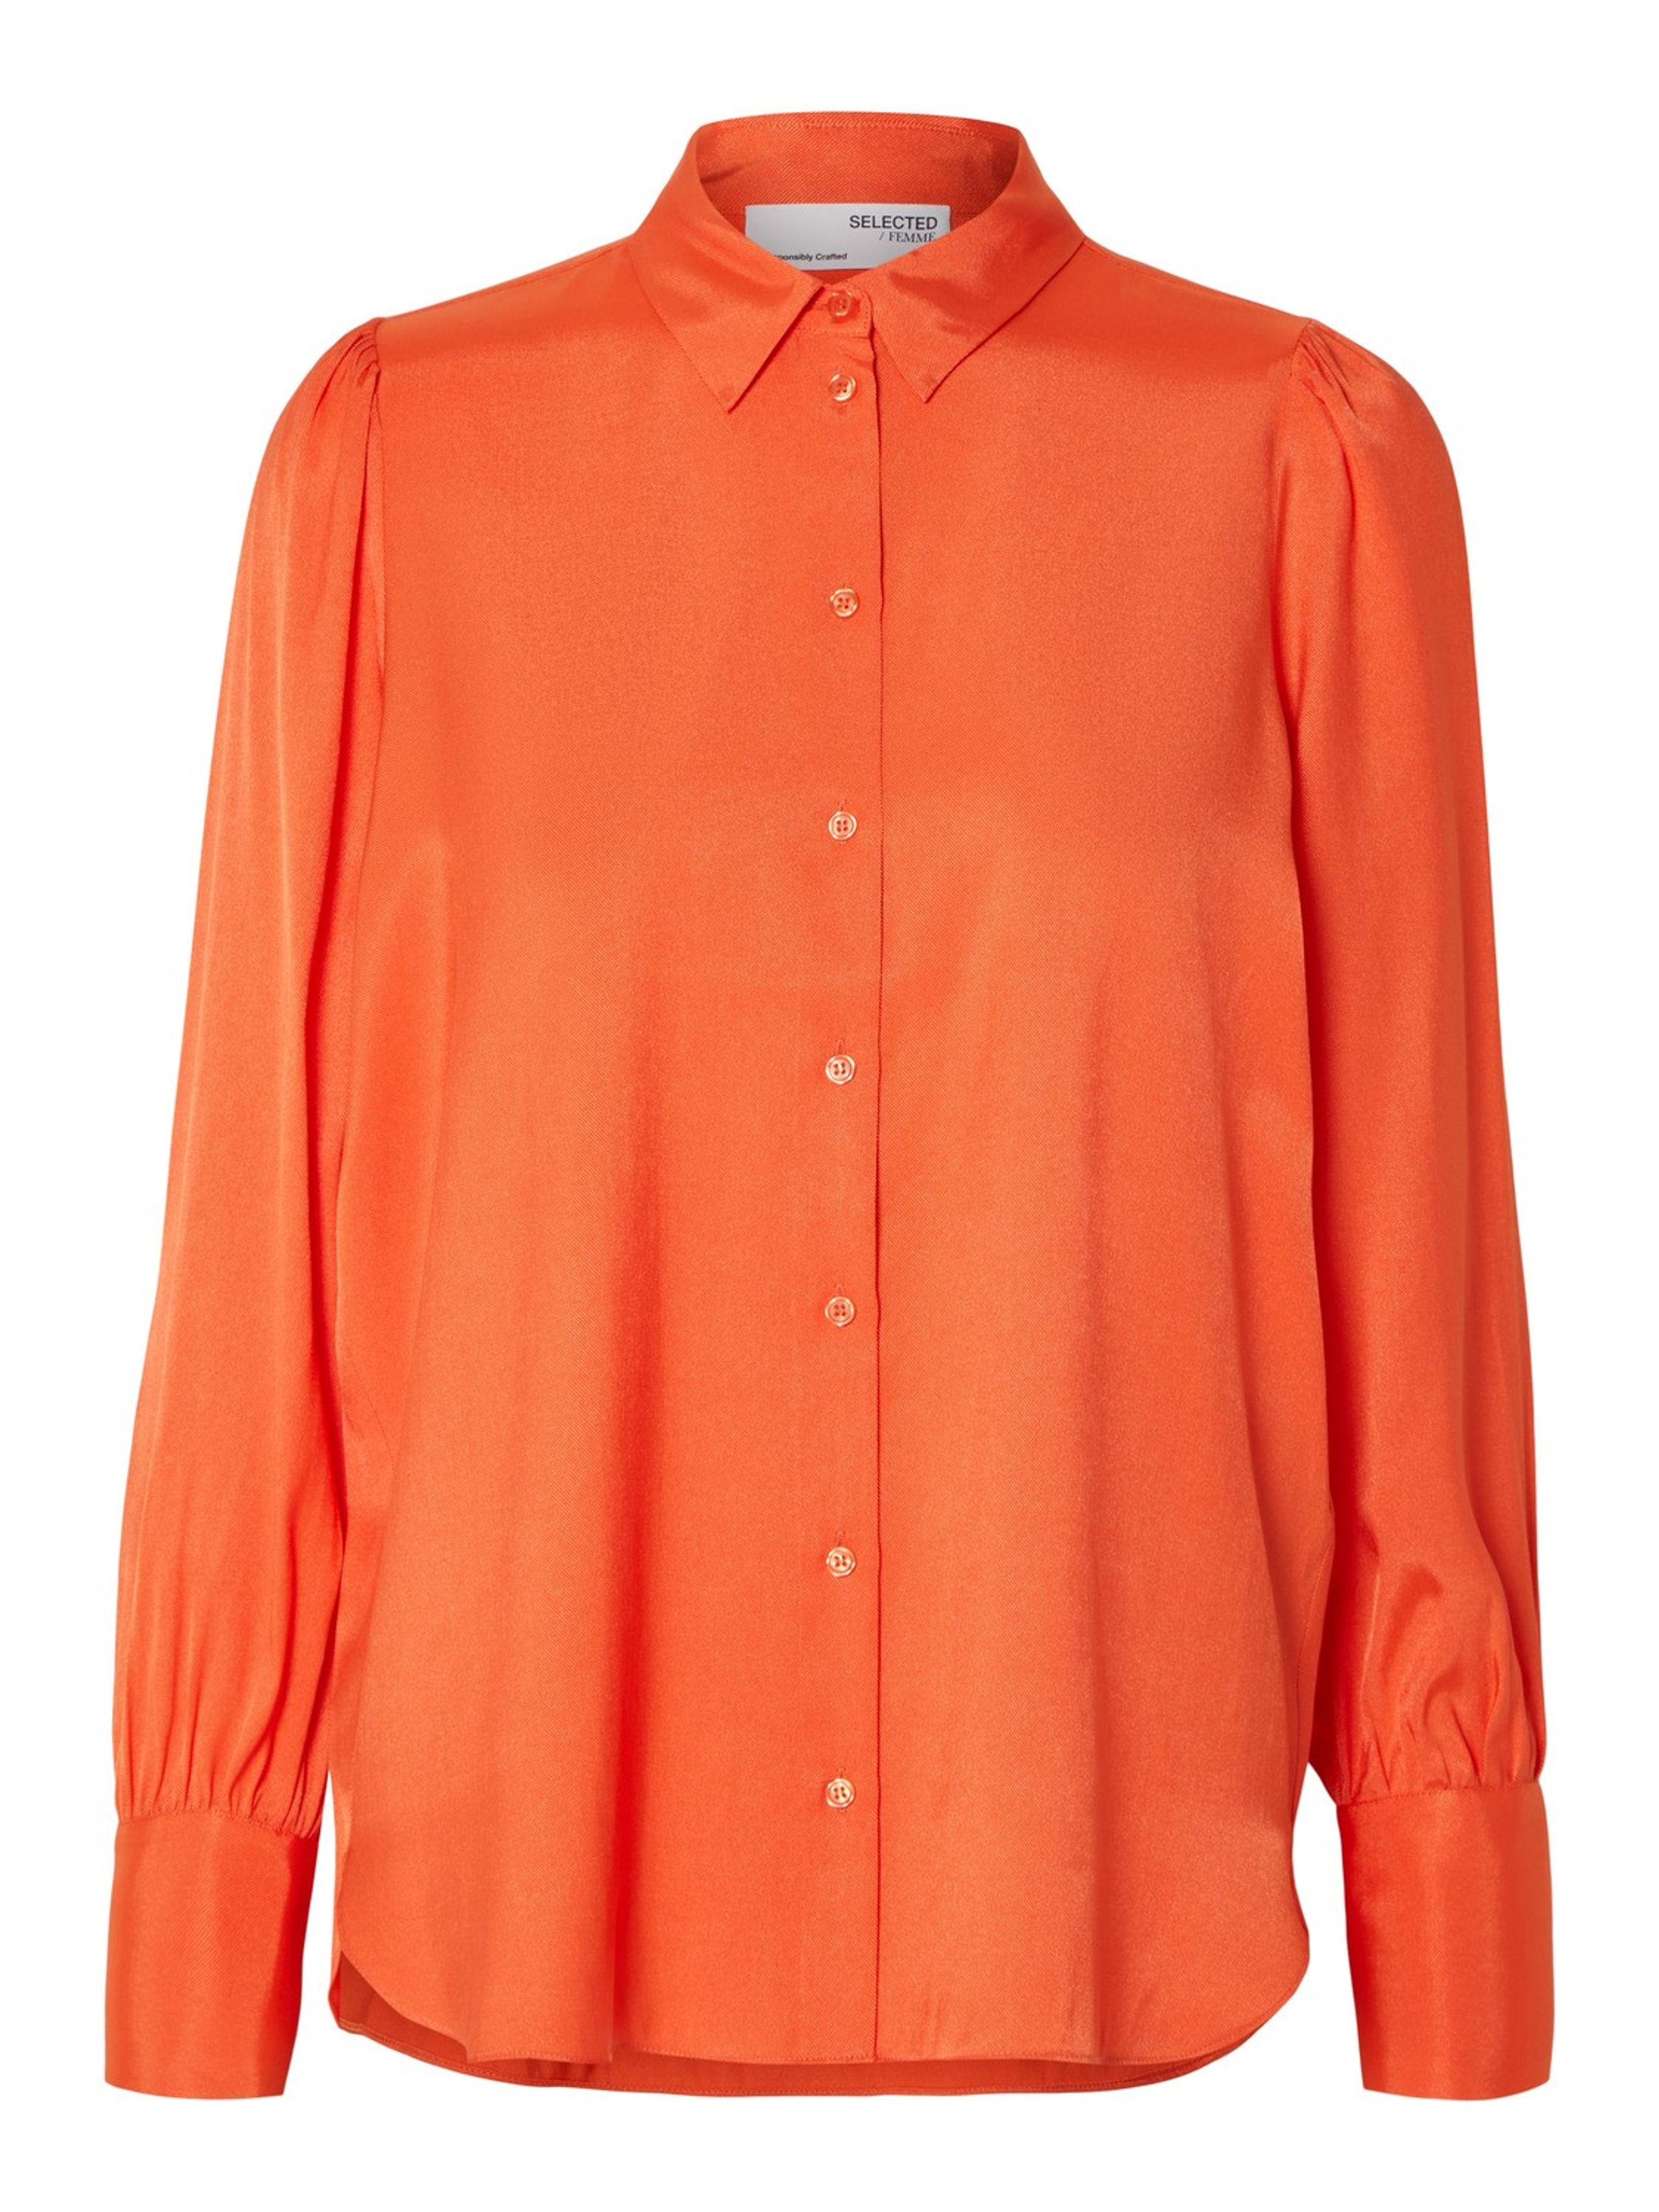 Selected Femme - SLFAlfa LS Shirt - Shirt - Orangeaid